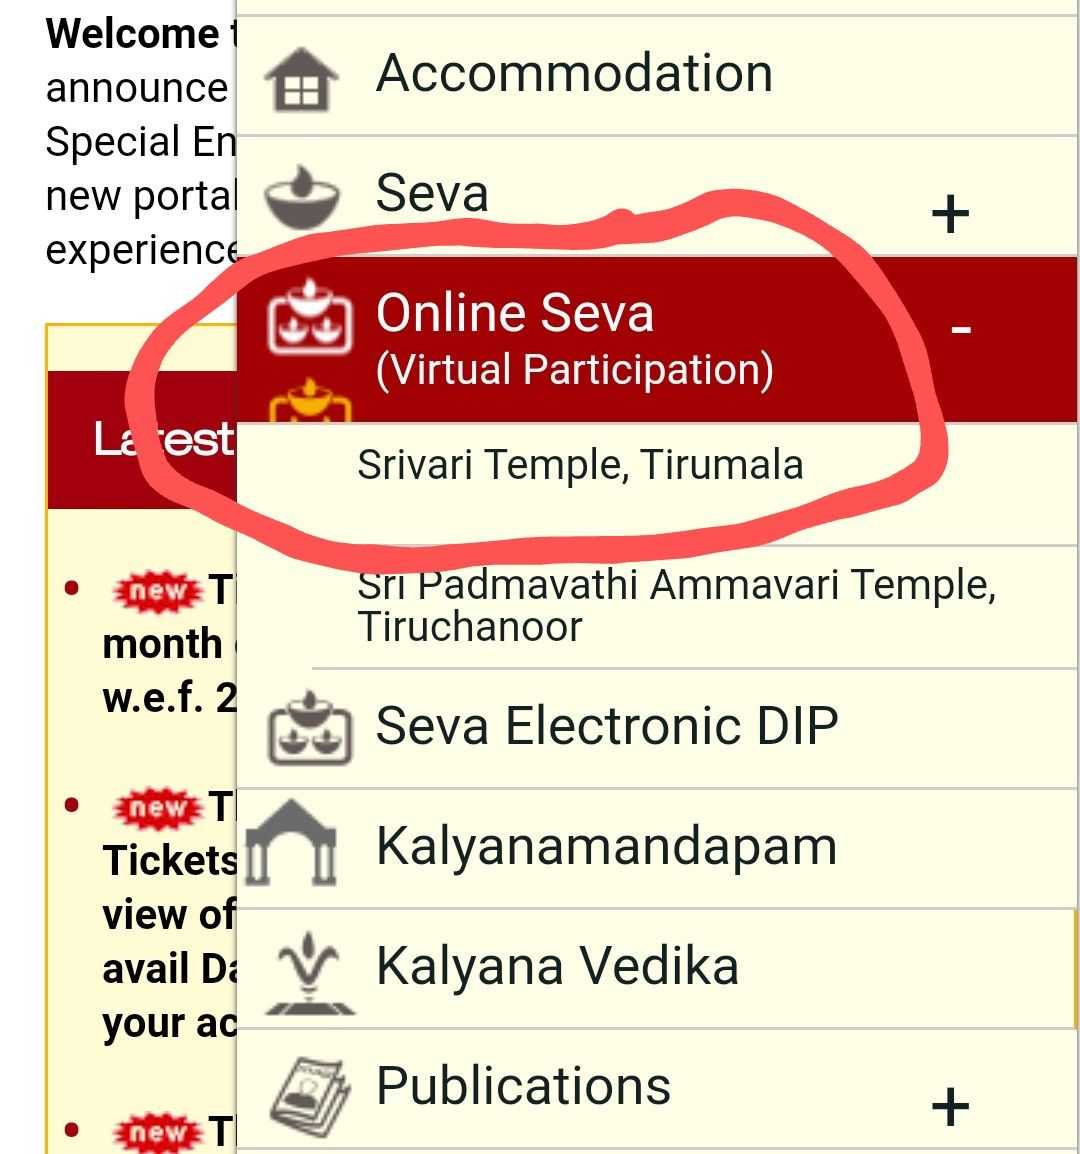 Click on Online Seva > Srivari Temple, Tirumala